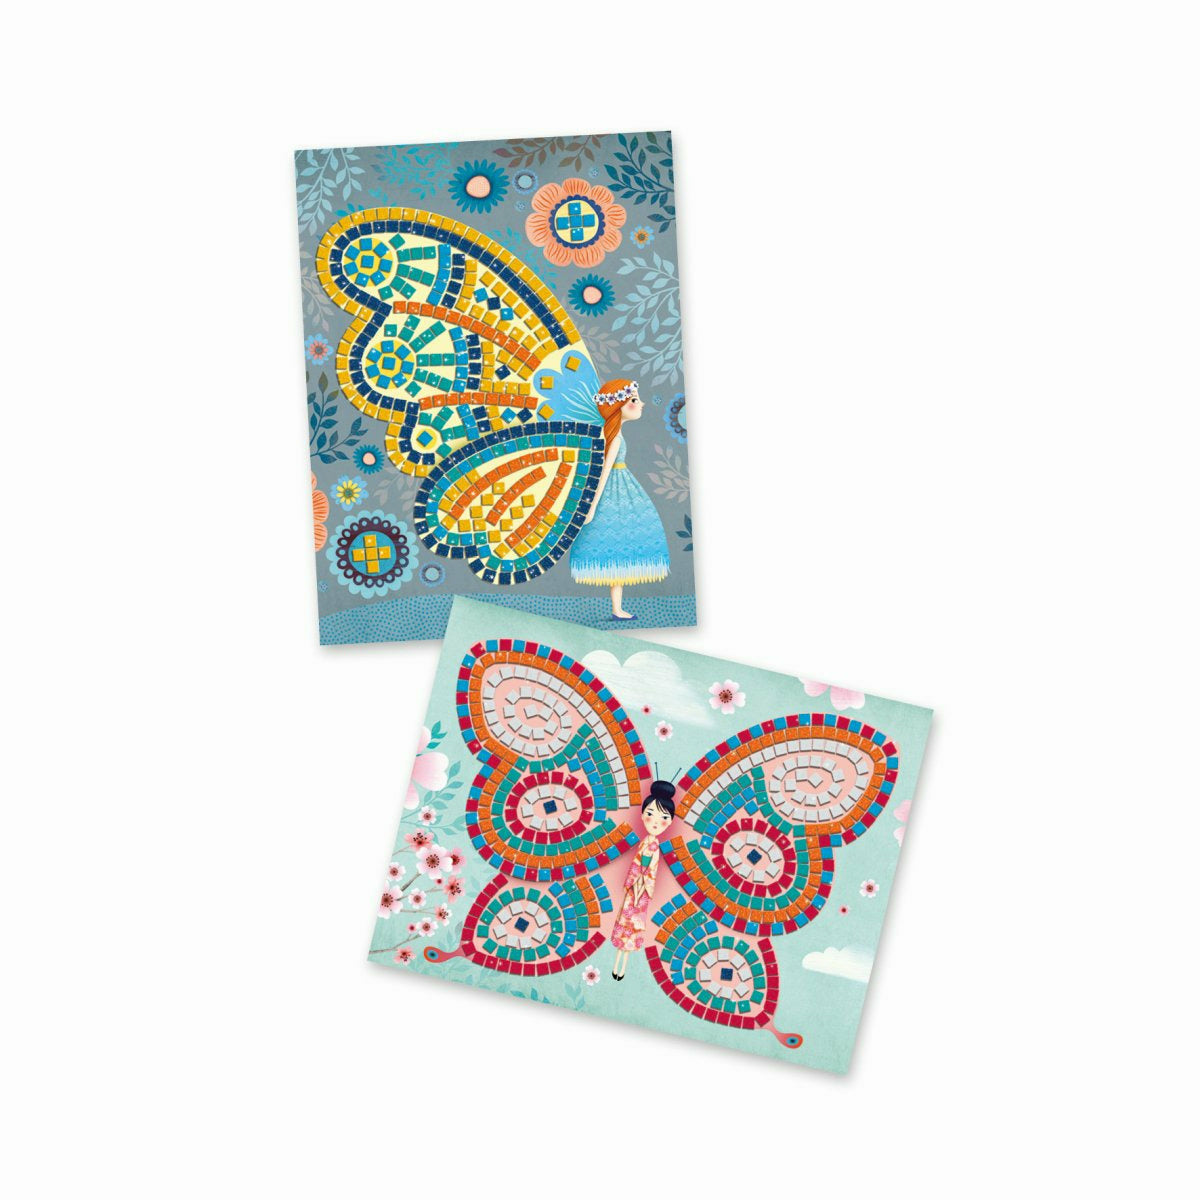 Djeco | Mosaike: Glitzer Schmetterlinge